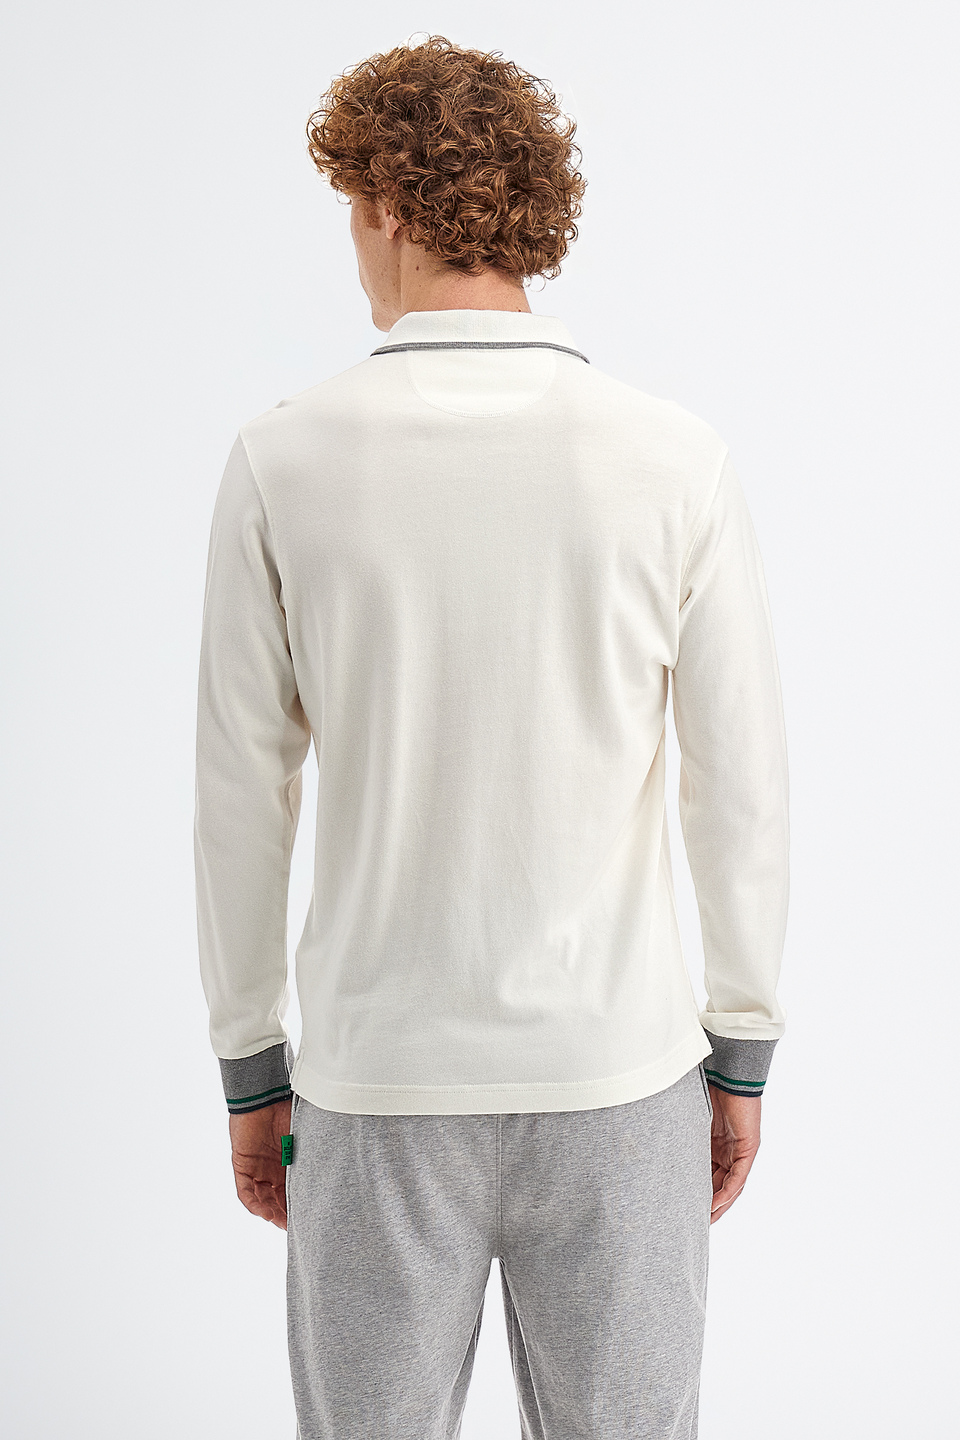 Polo de hombre en algodón jersey manga larga slim fit | La Martina - Official Online Shop